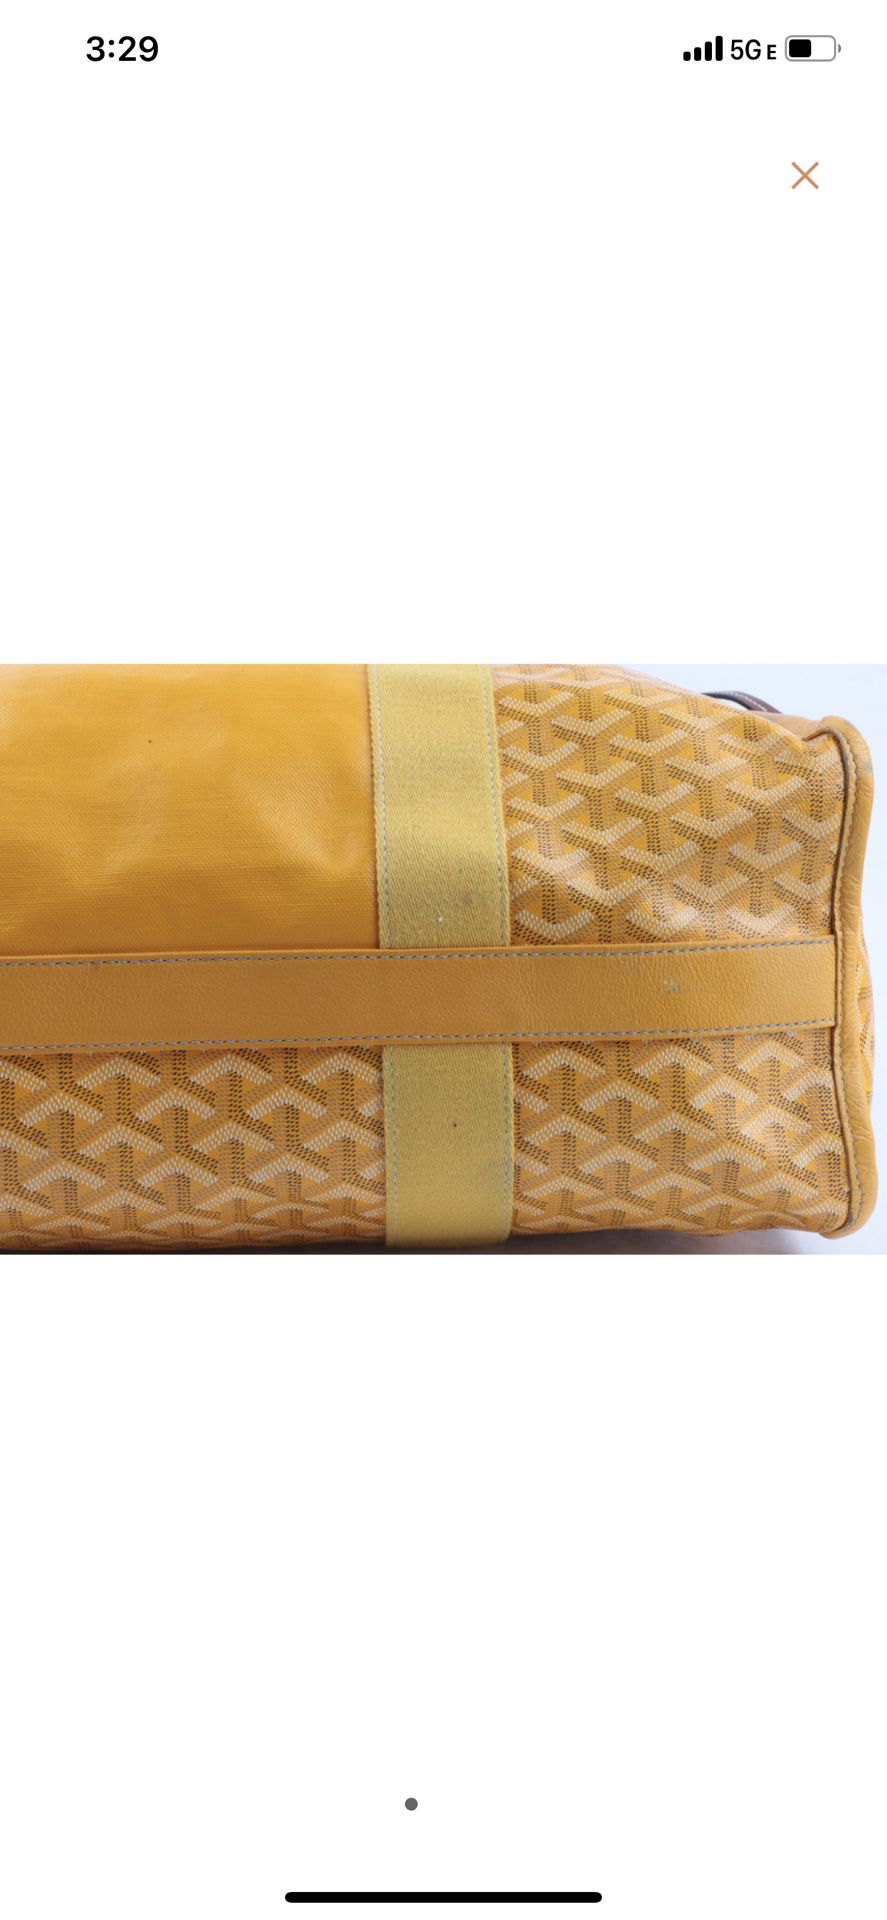 Villette MM tote bag for Sale in Las Vegas, NV - OfferUp